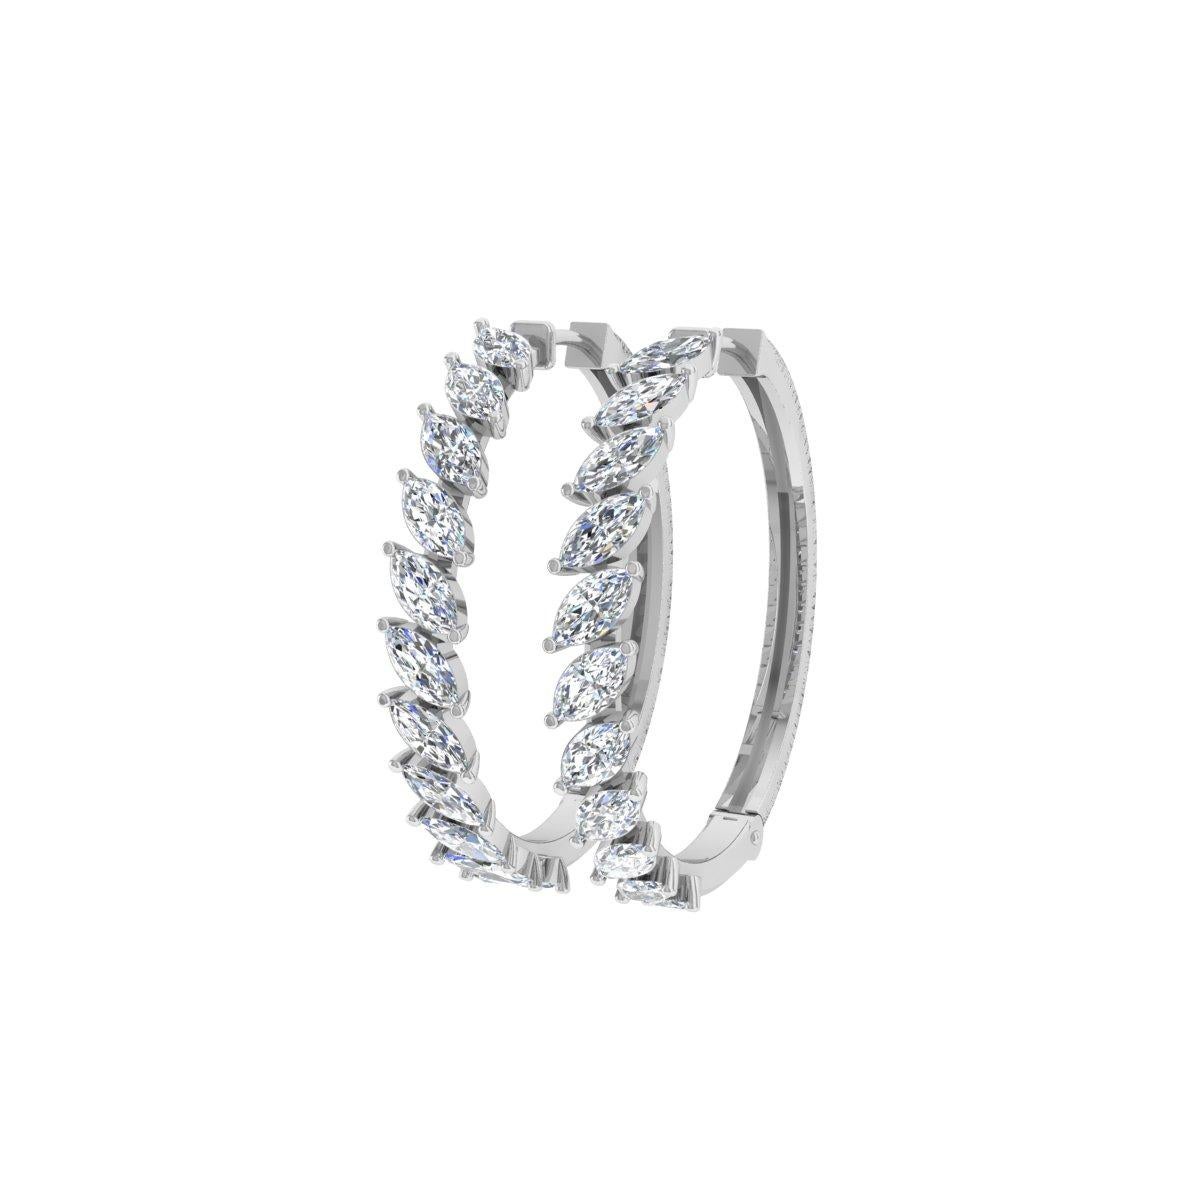 2.3 Carat Marquise Shape Diamond Hoop Earrings 18 Karat White Gold Fine Jewelry For Sale 3